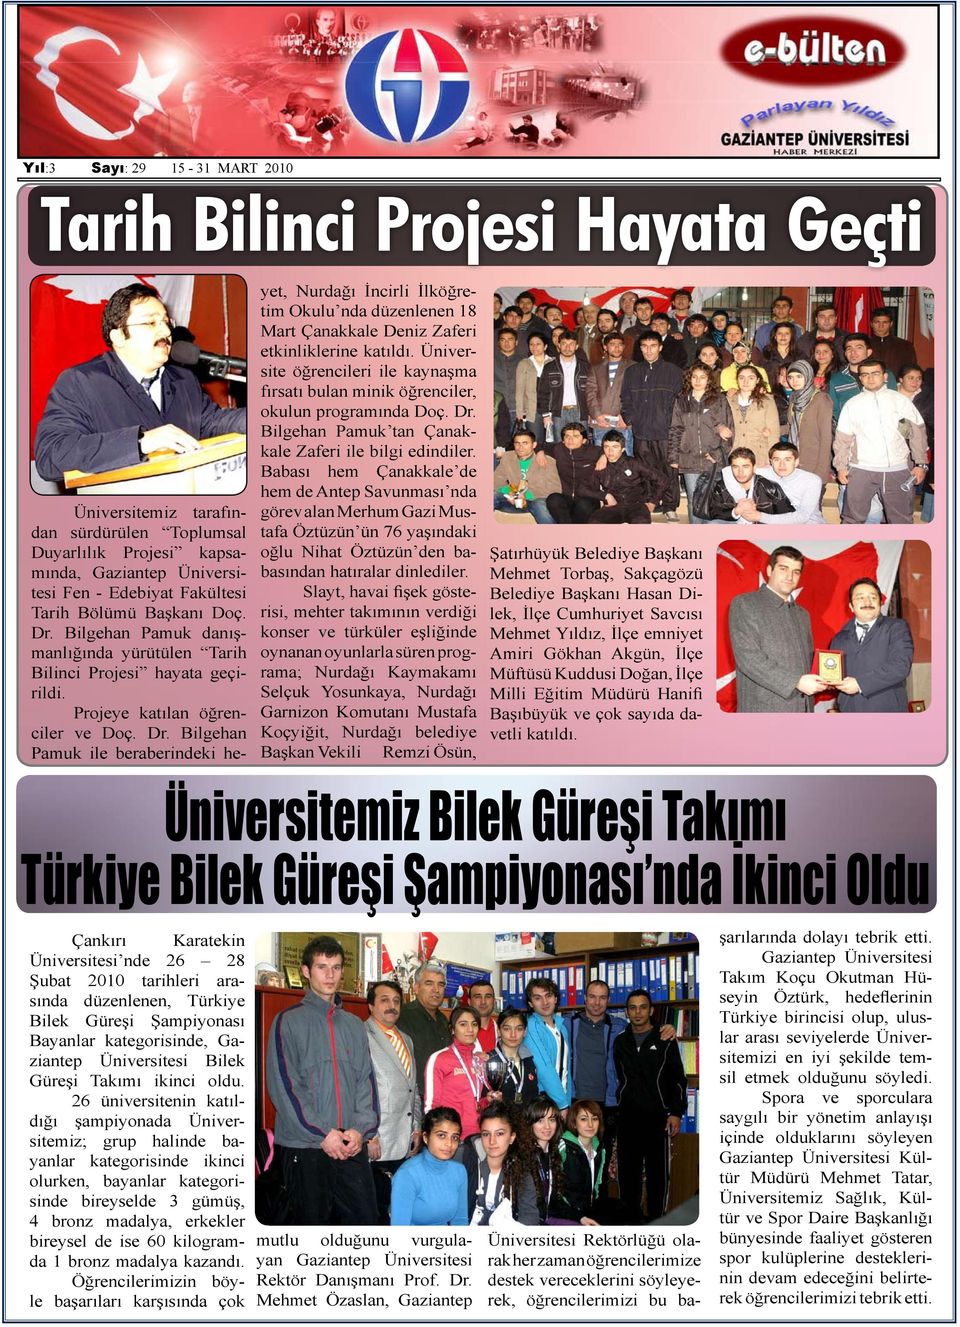 Bilgehan Pamuk ile beraberindeki he- yet, Nurdağı İncirli İlköğretim Okulu nda düzenlenen 18 Mart Çanakkale Deniz Zaferi etkinliklerine katıldı.